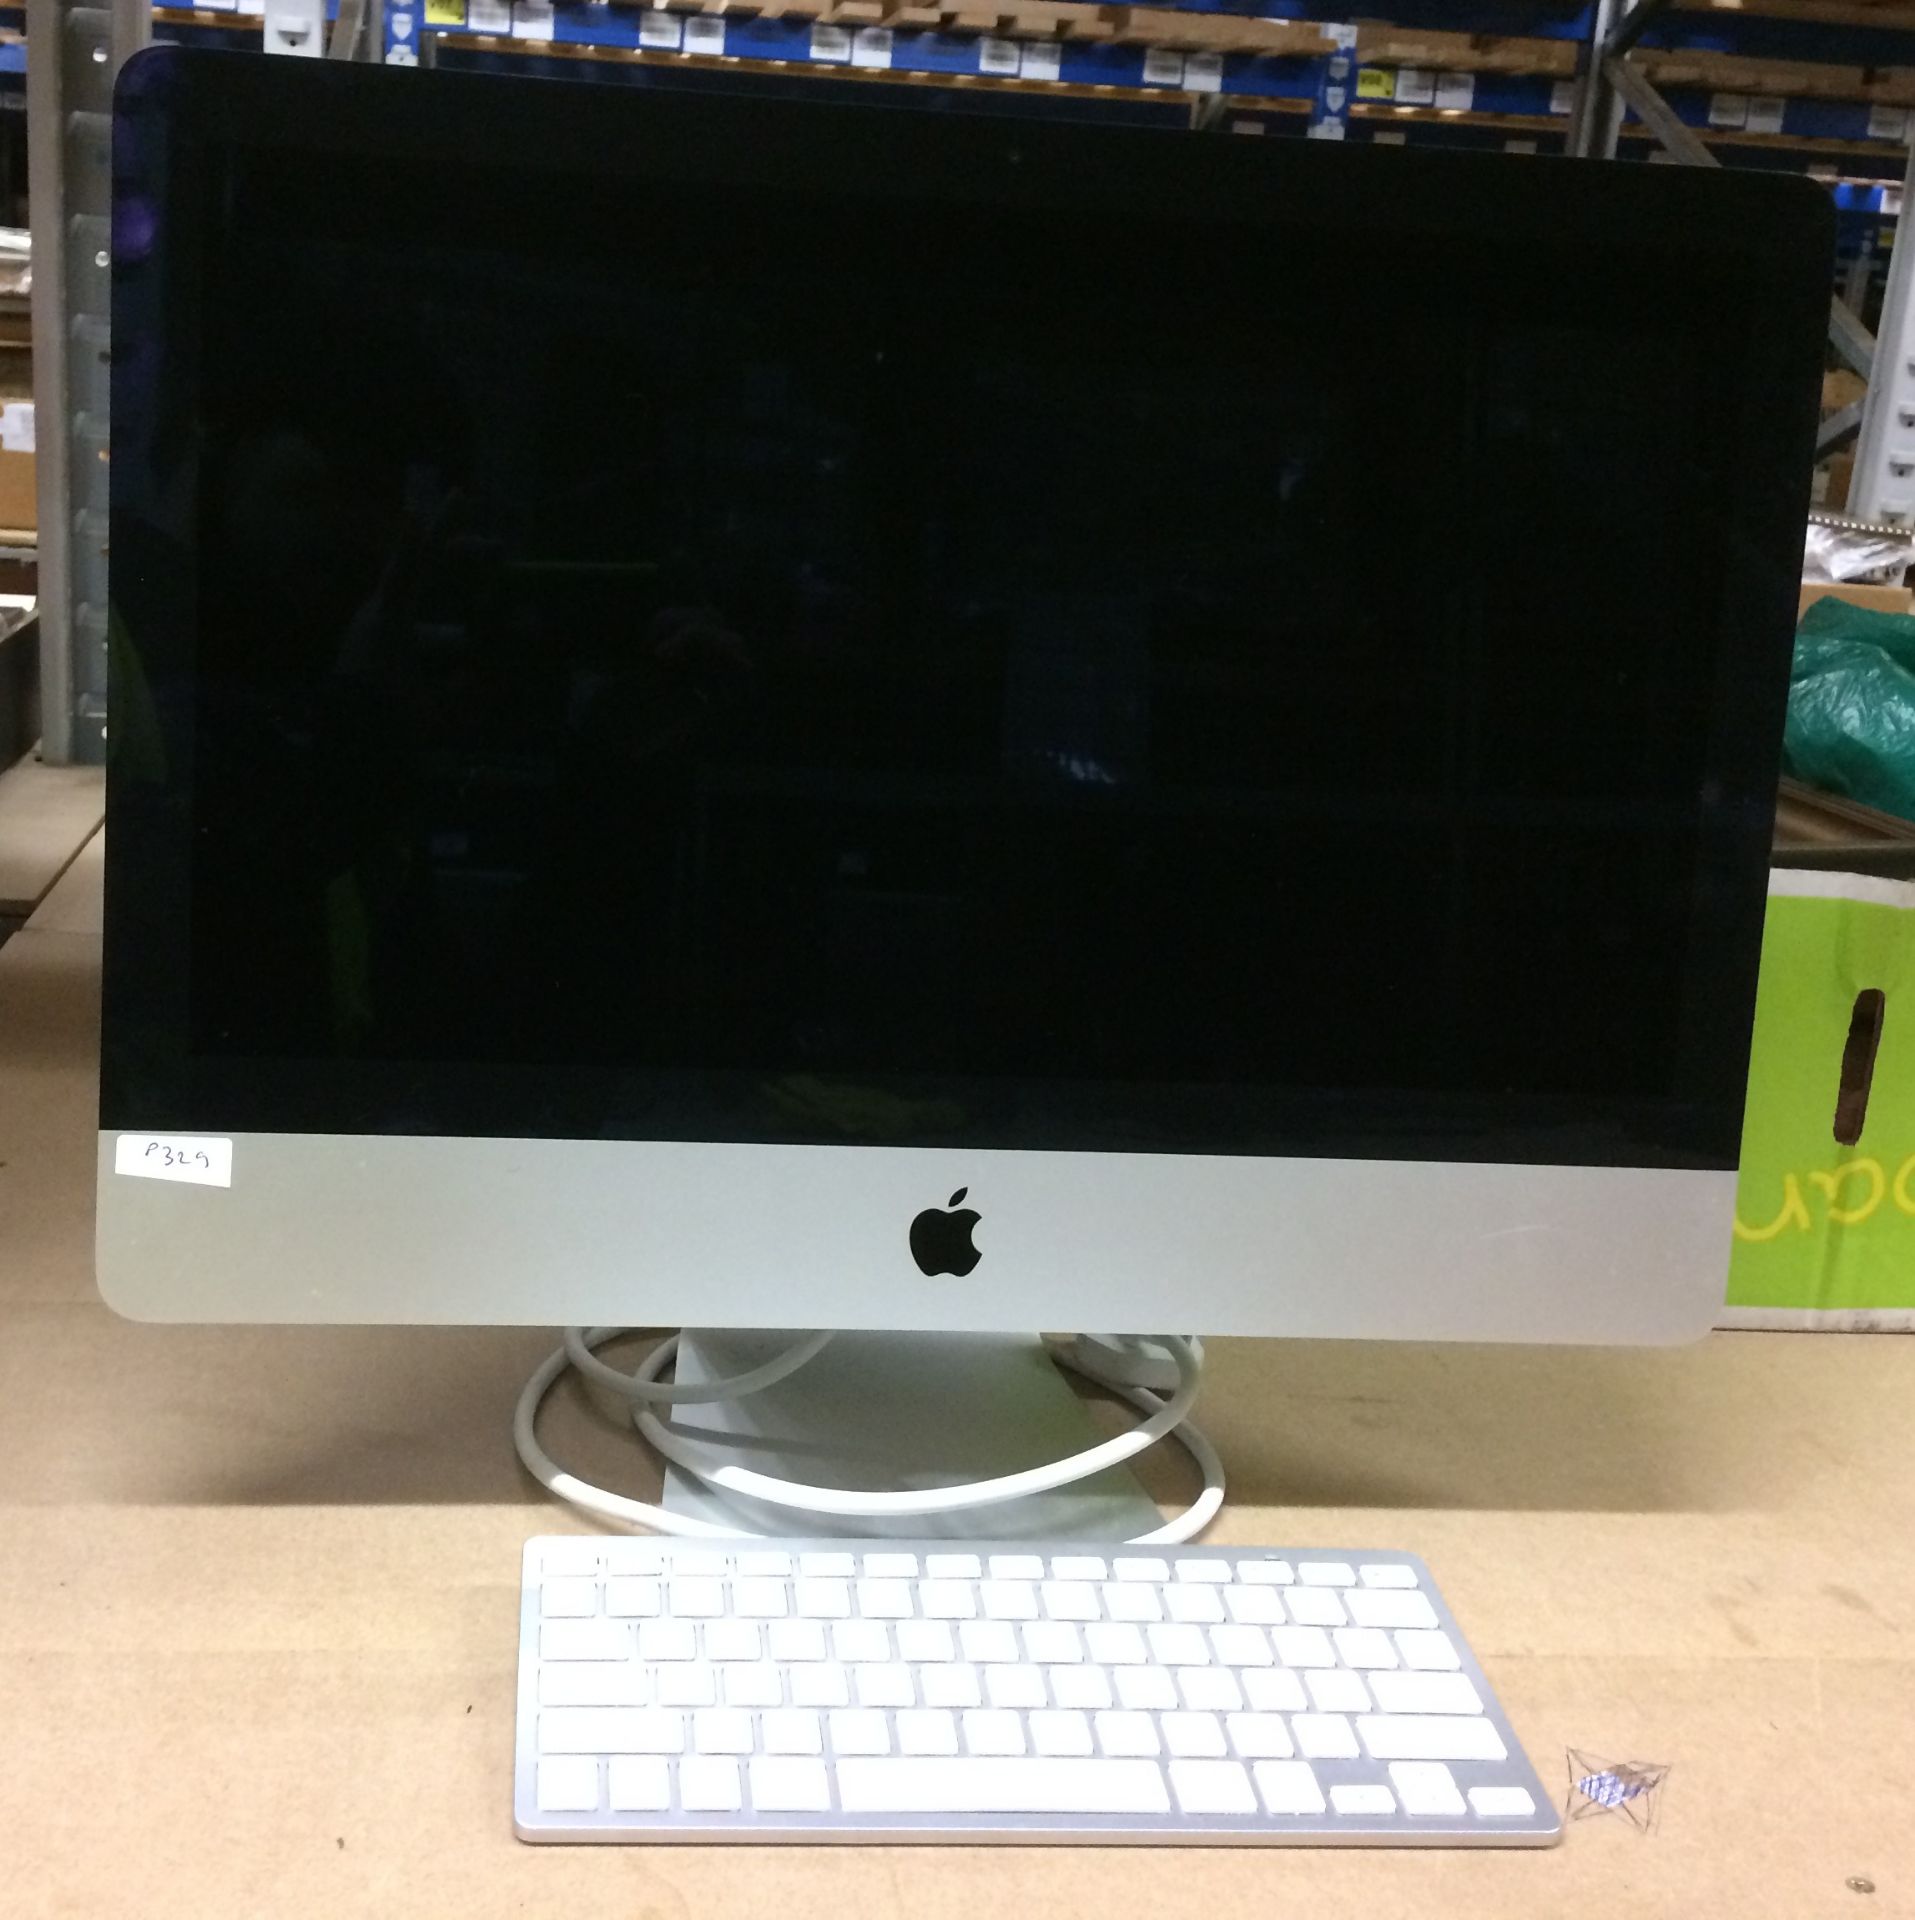 An Apple i-Mac 21.5" computer, 2.